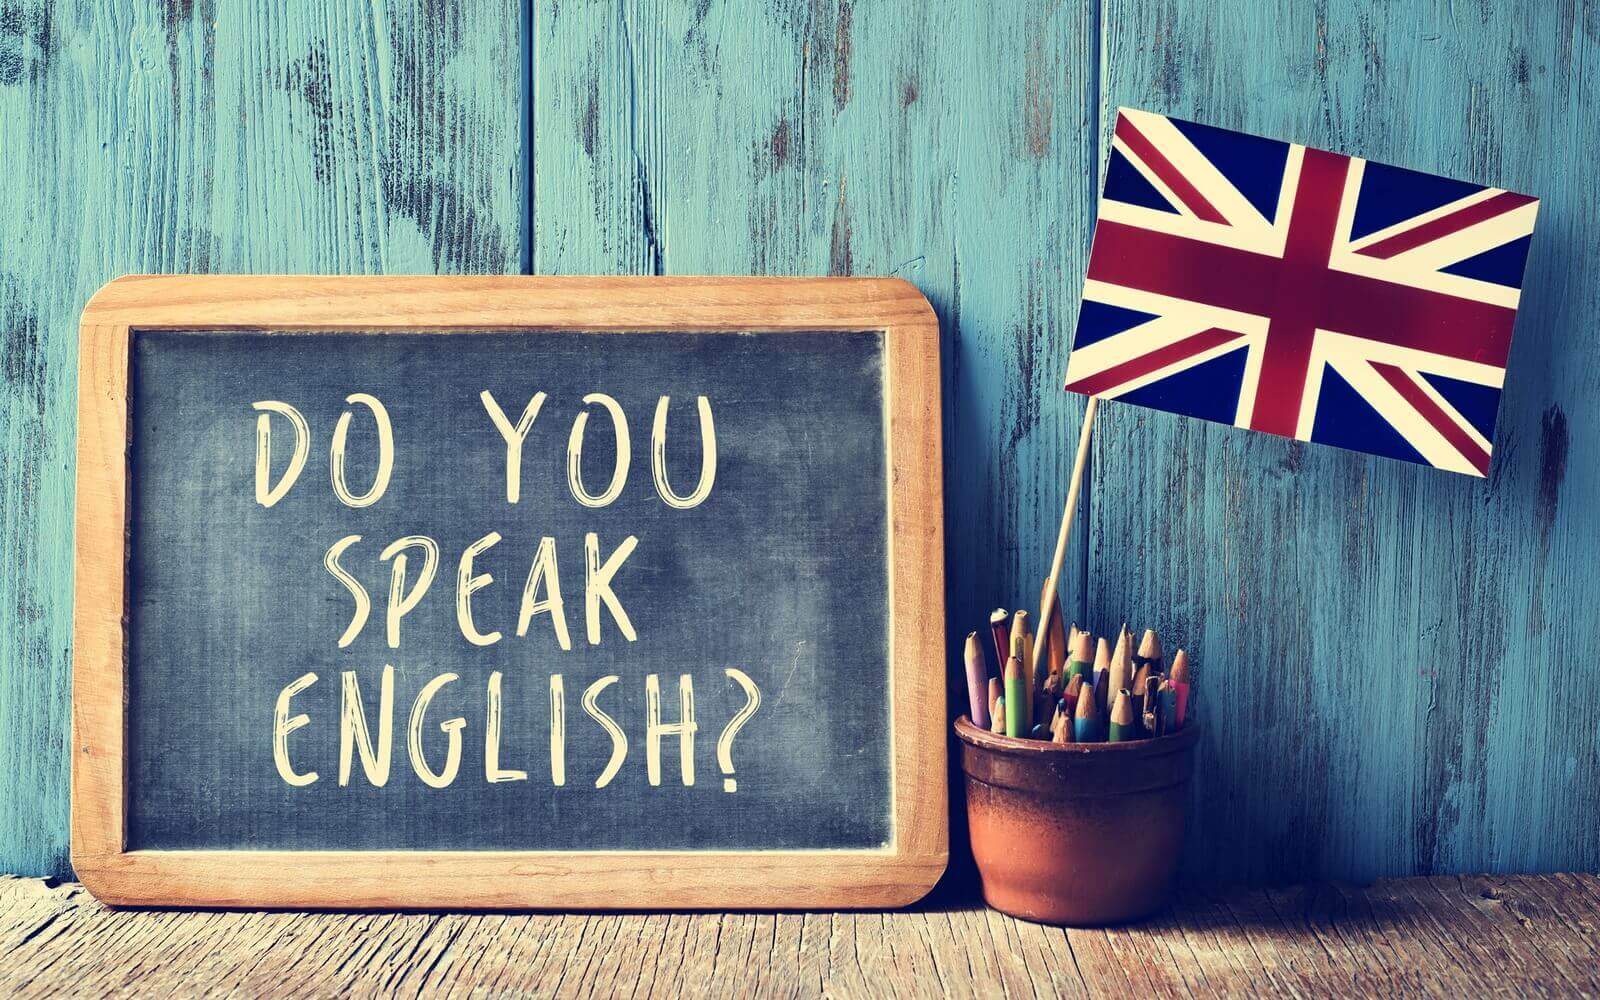 Como começar a ensinar inglês sem professor particular